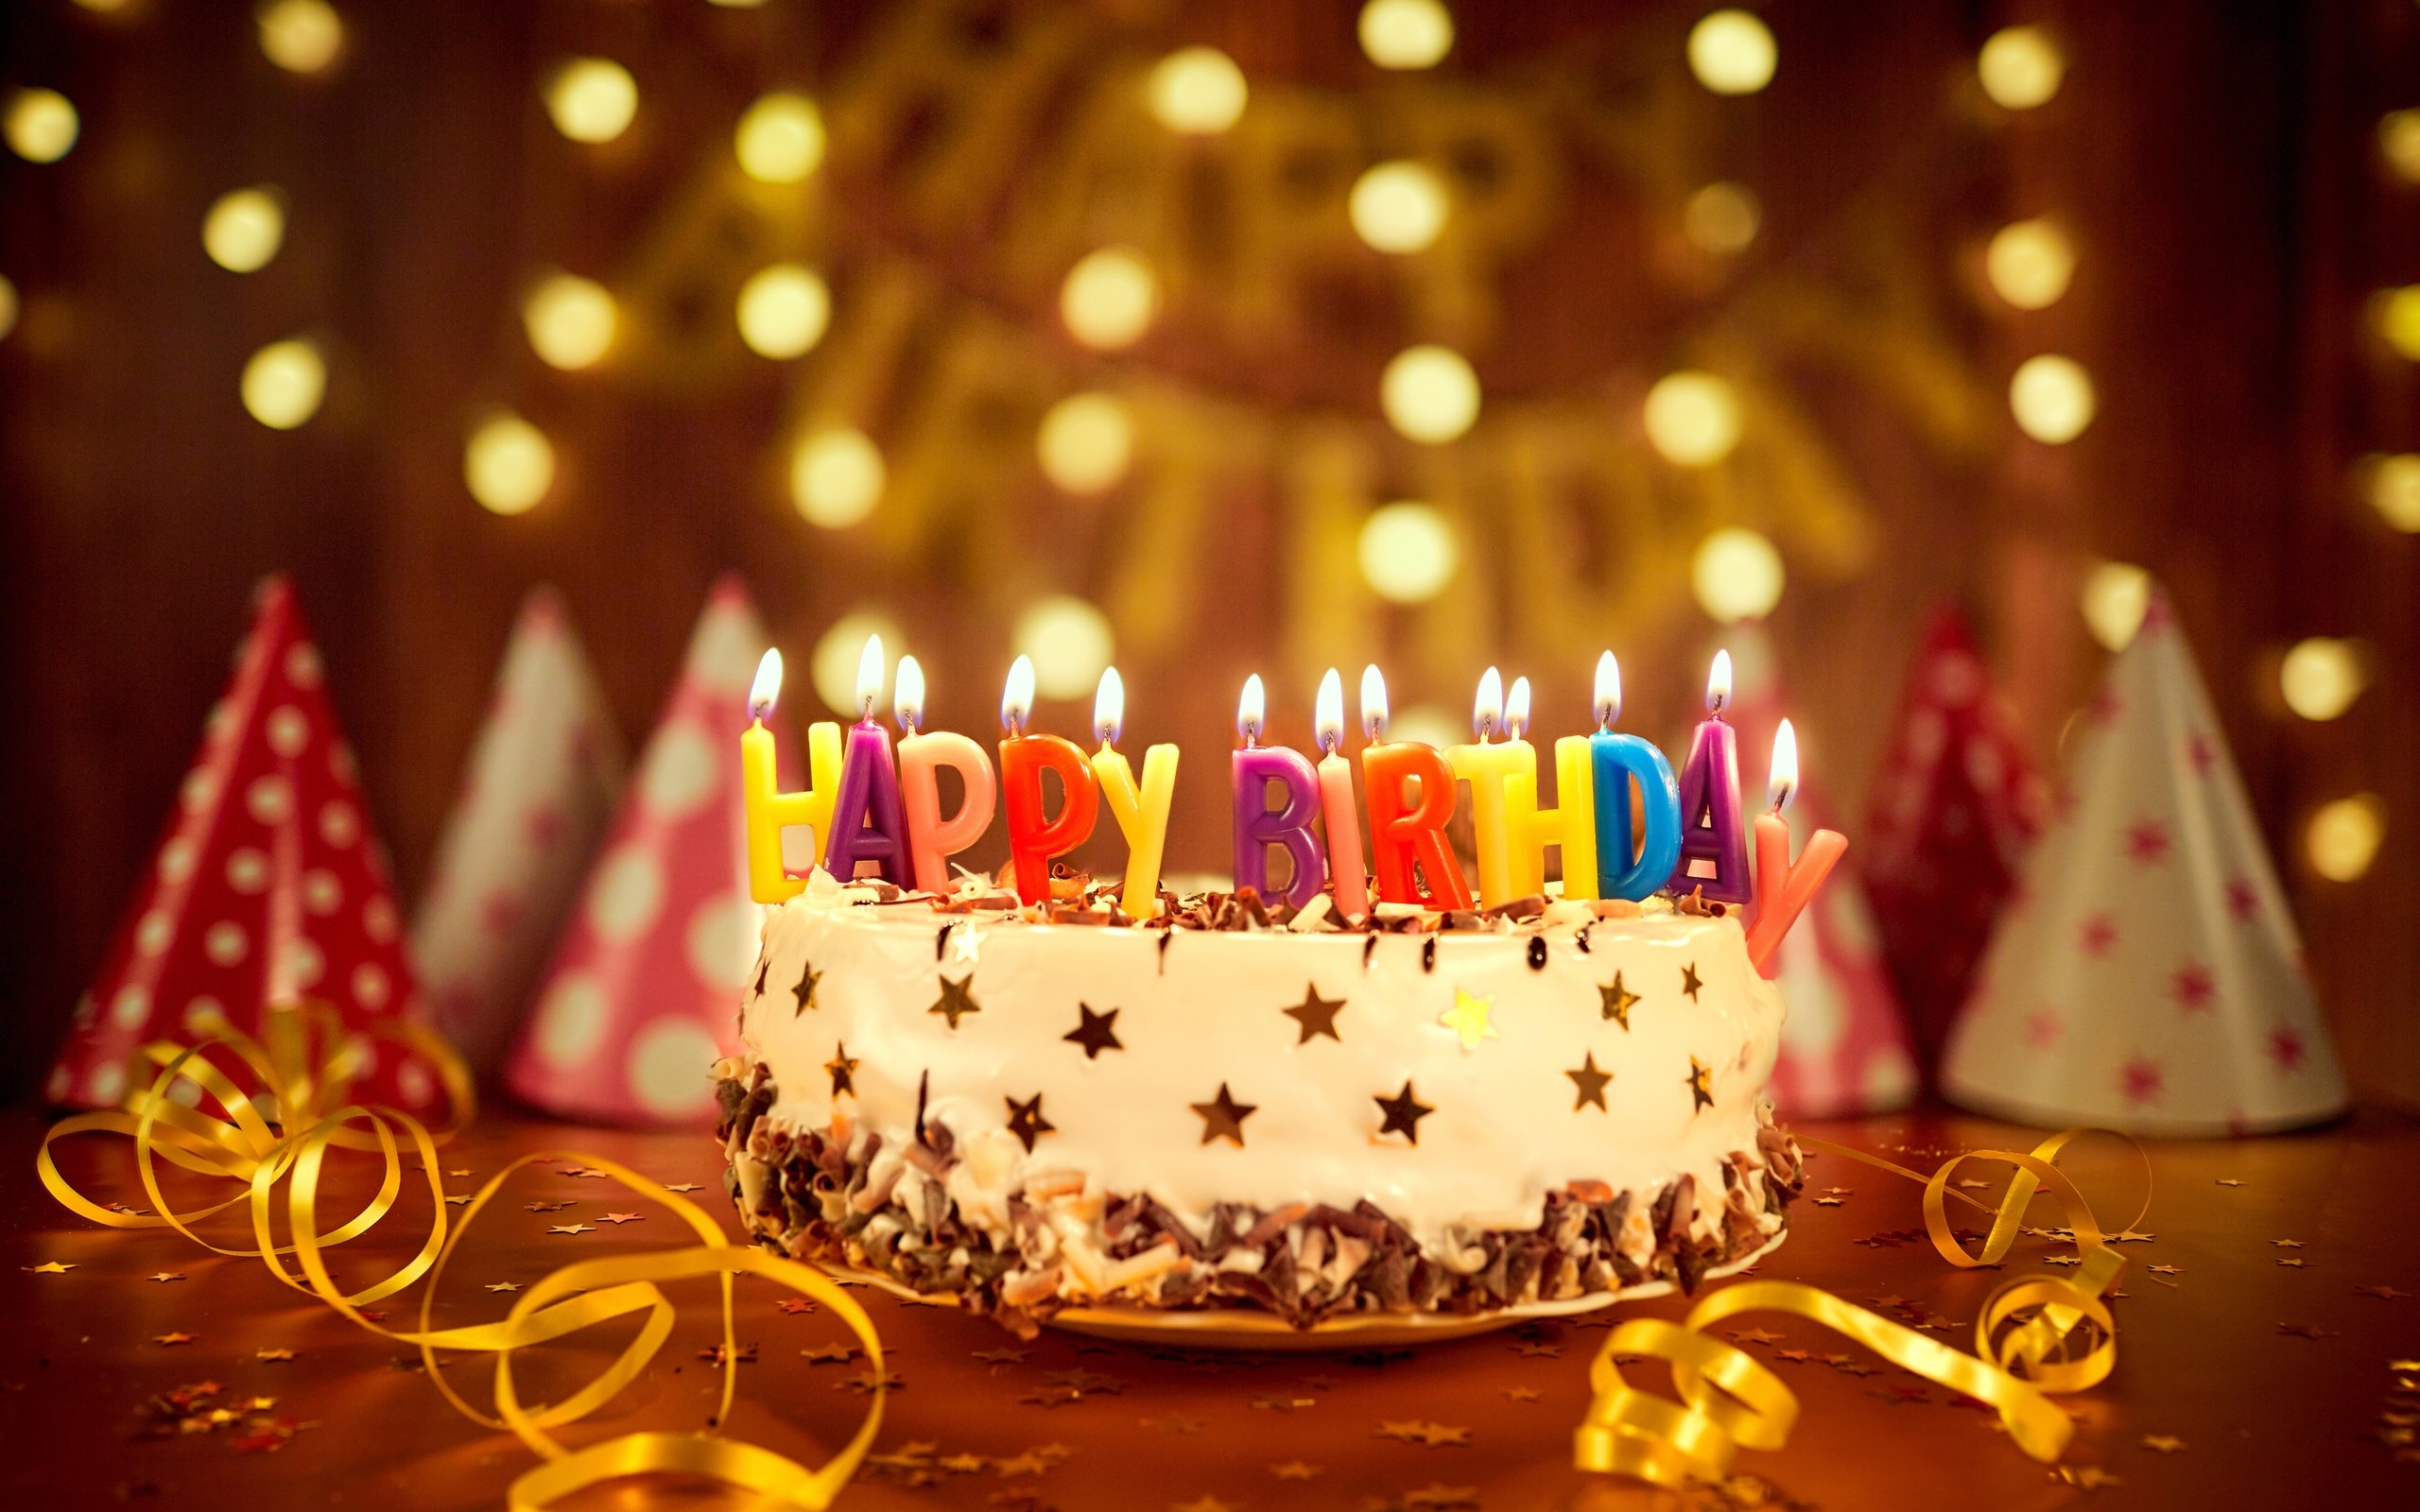 С днём рождения открытки с поздравлениями с днём рождения , торт со свечами С днём рождения , открытки, картинки поздравления в день рождения , красивые с изображением торта со свечами , яркие , торт , свечи с днём рождения , яркость красок.